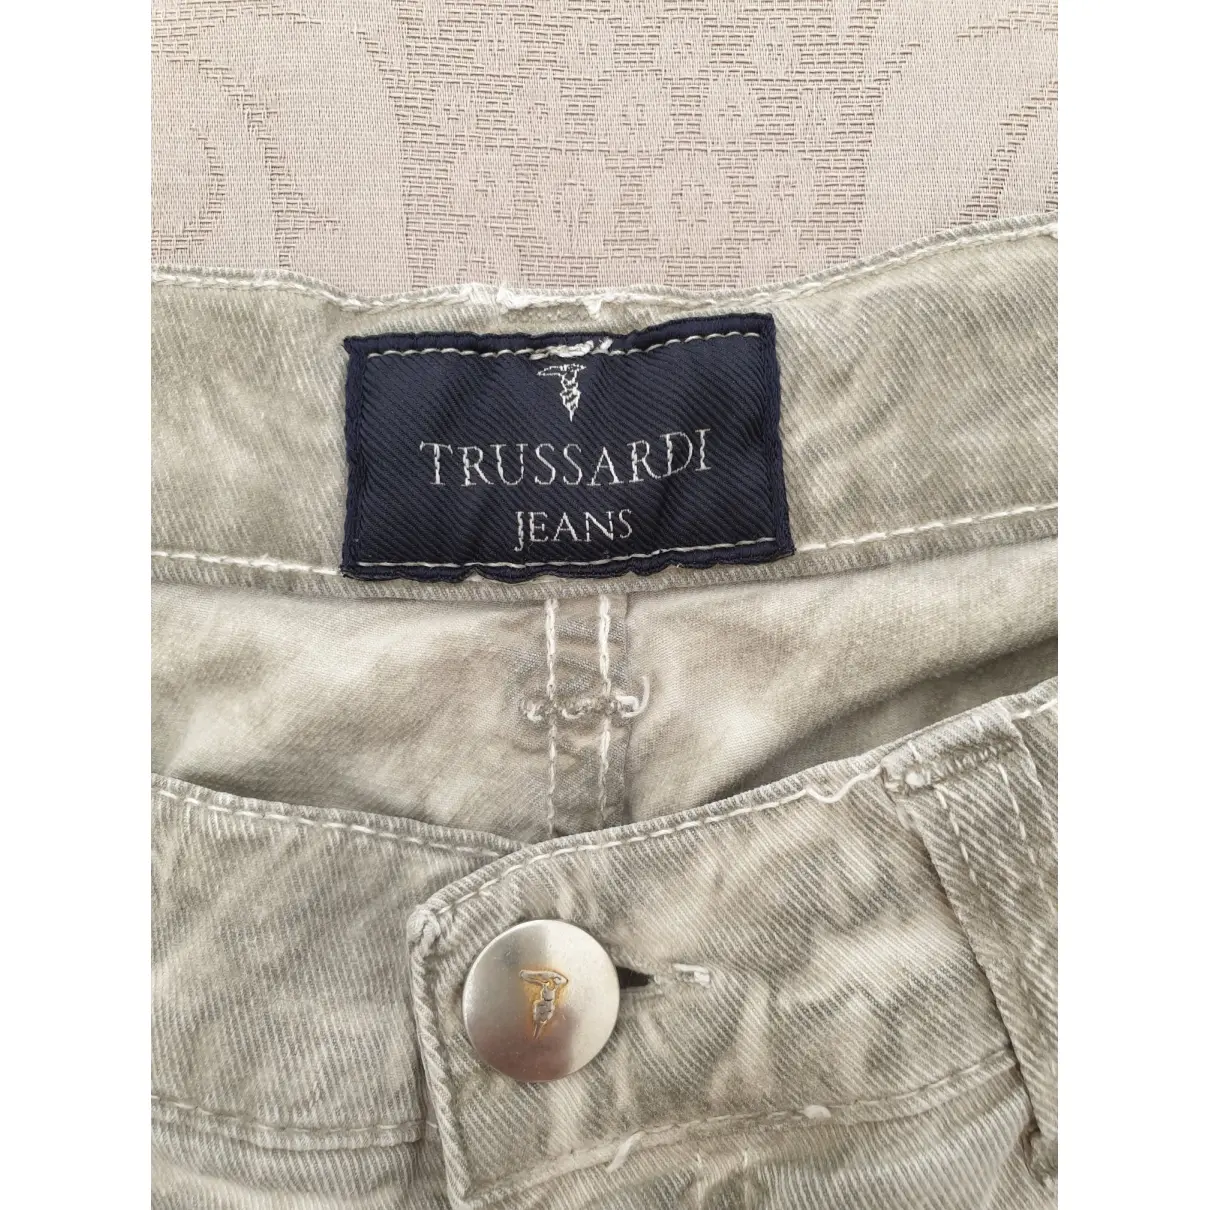 Buy Trussardi Jeans Trousers online